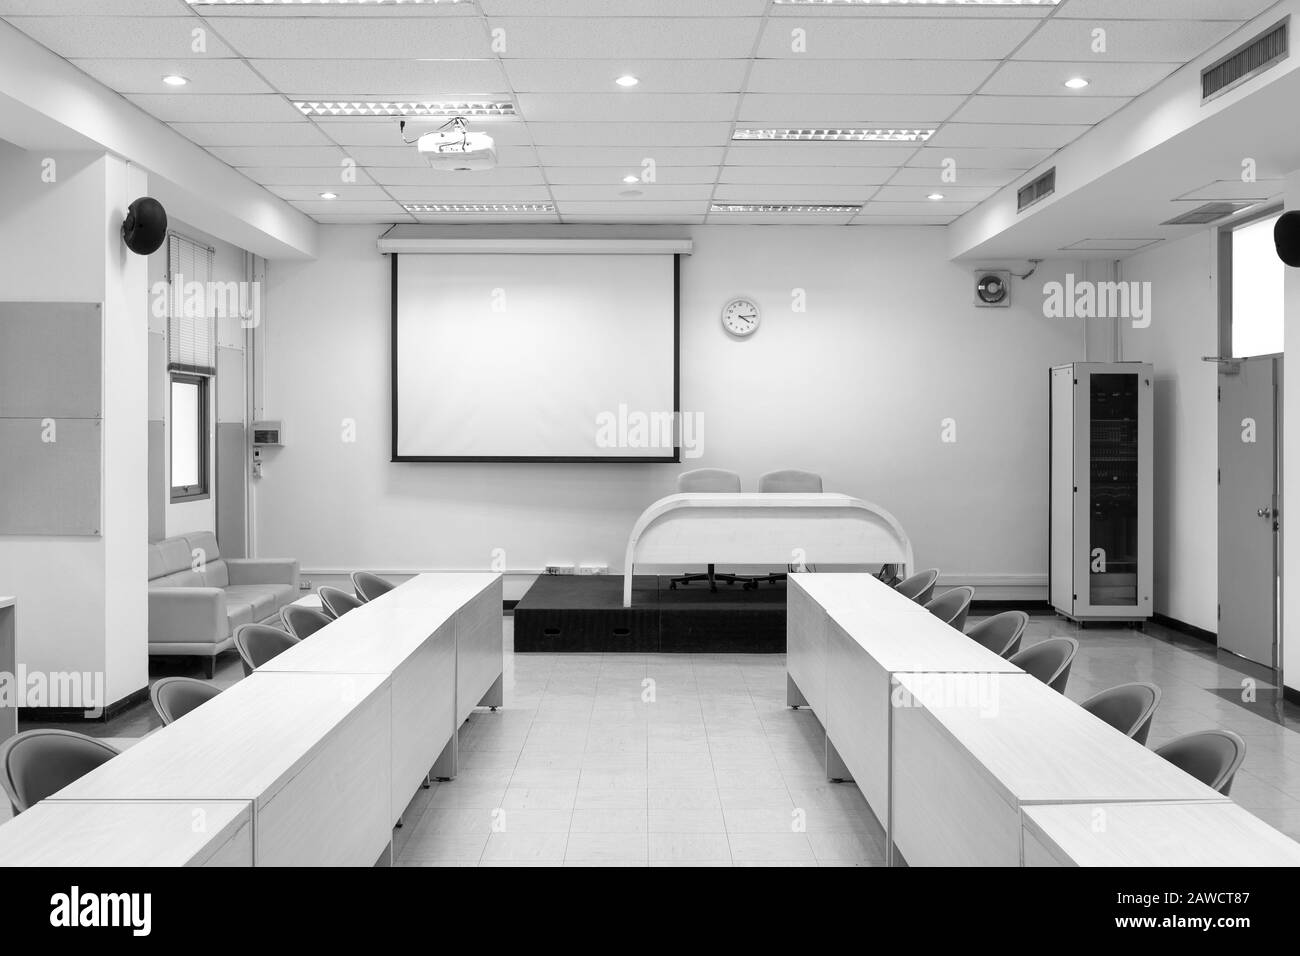 Salle de conférence intérieure, salle de réunion, salle de conférence, salle de classe, bureau, avec tableau de projection blanc. Banque D'Images